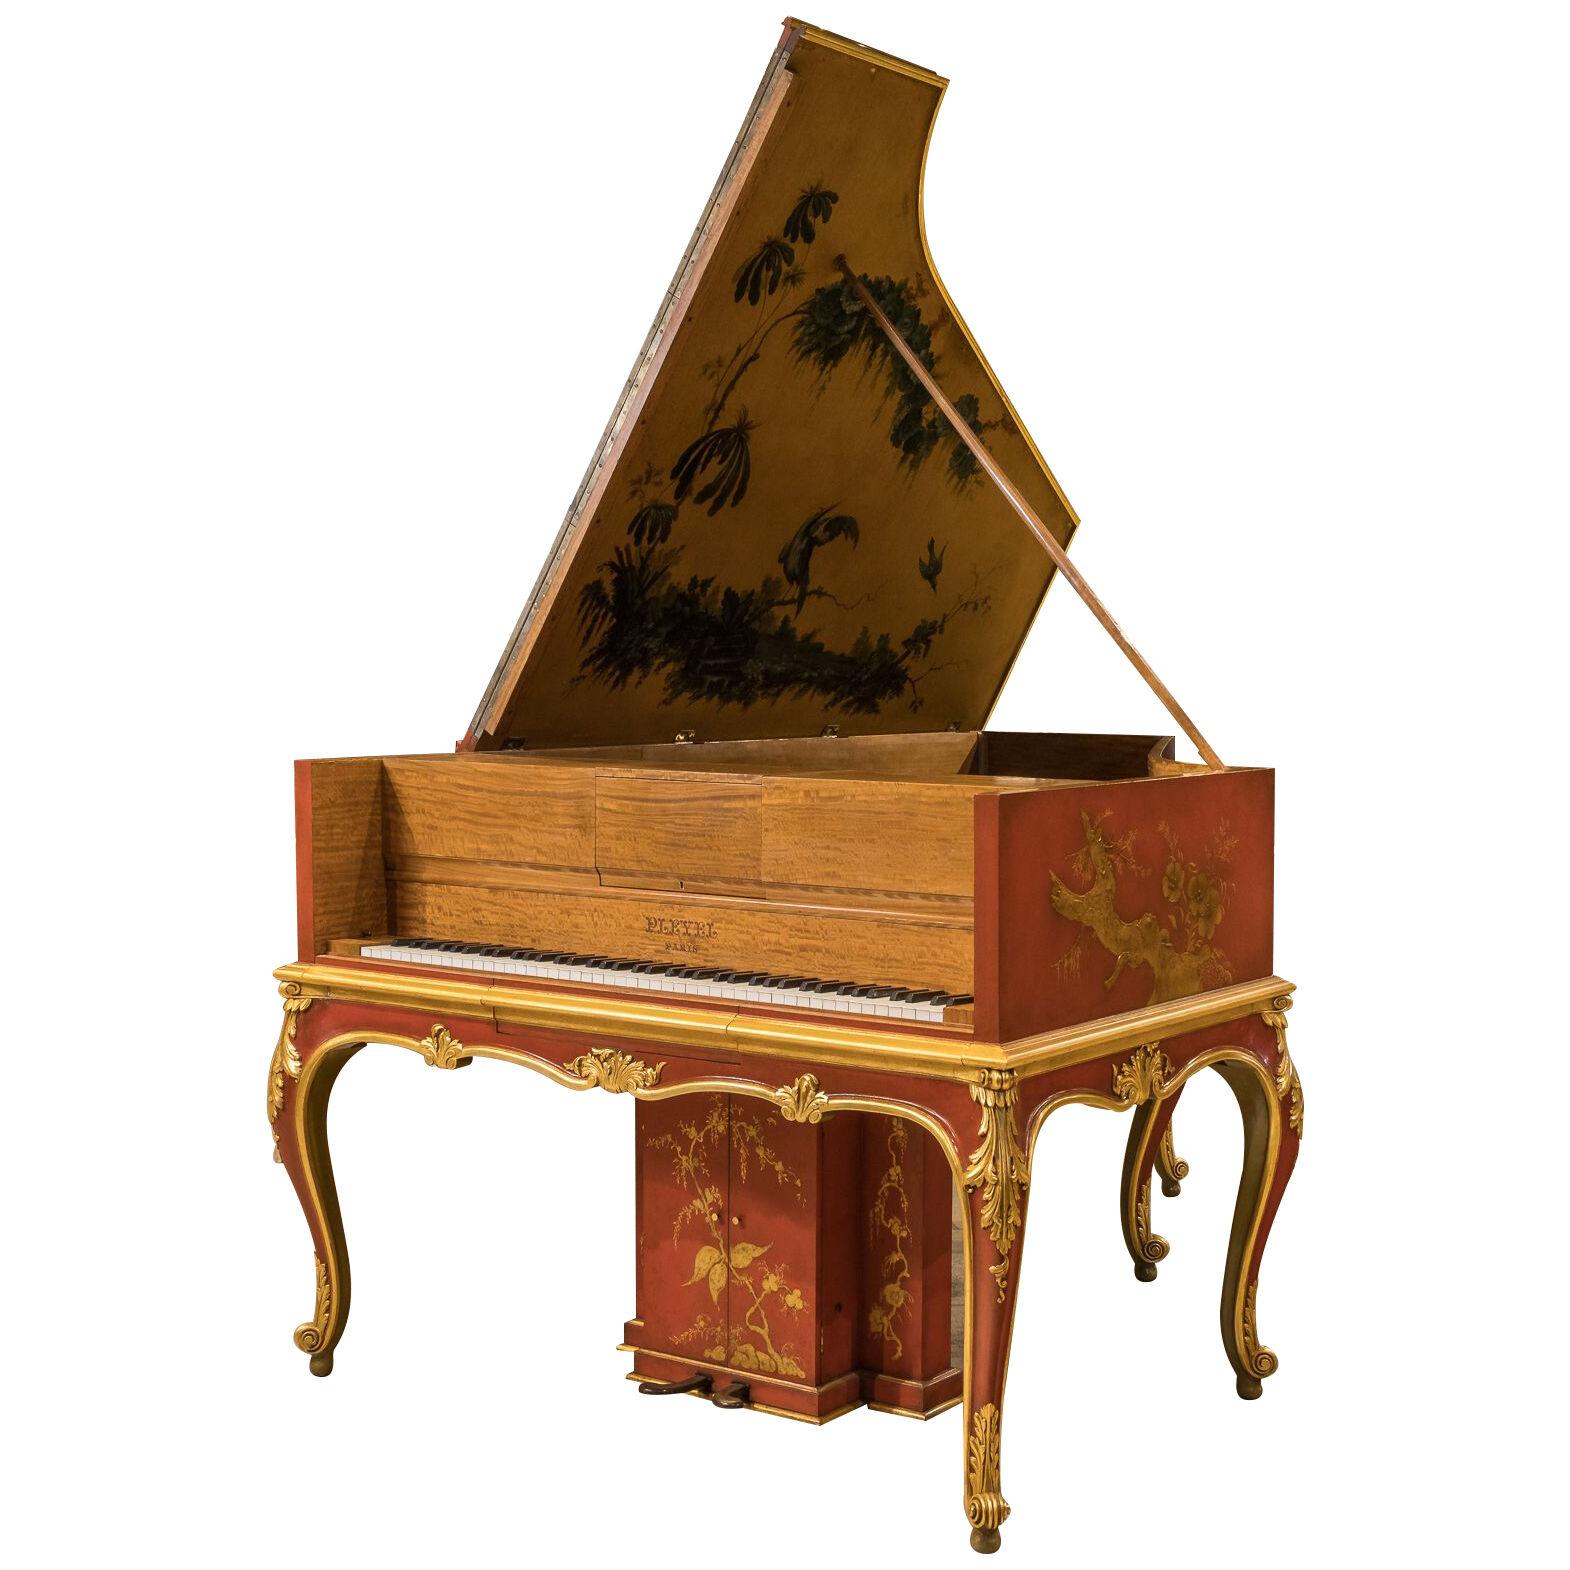 Pleyel Artcase Grand Piano